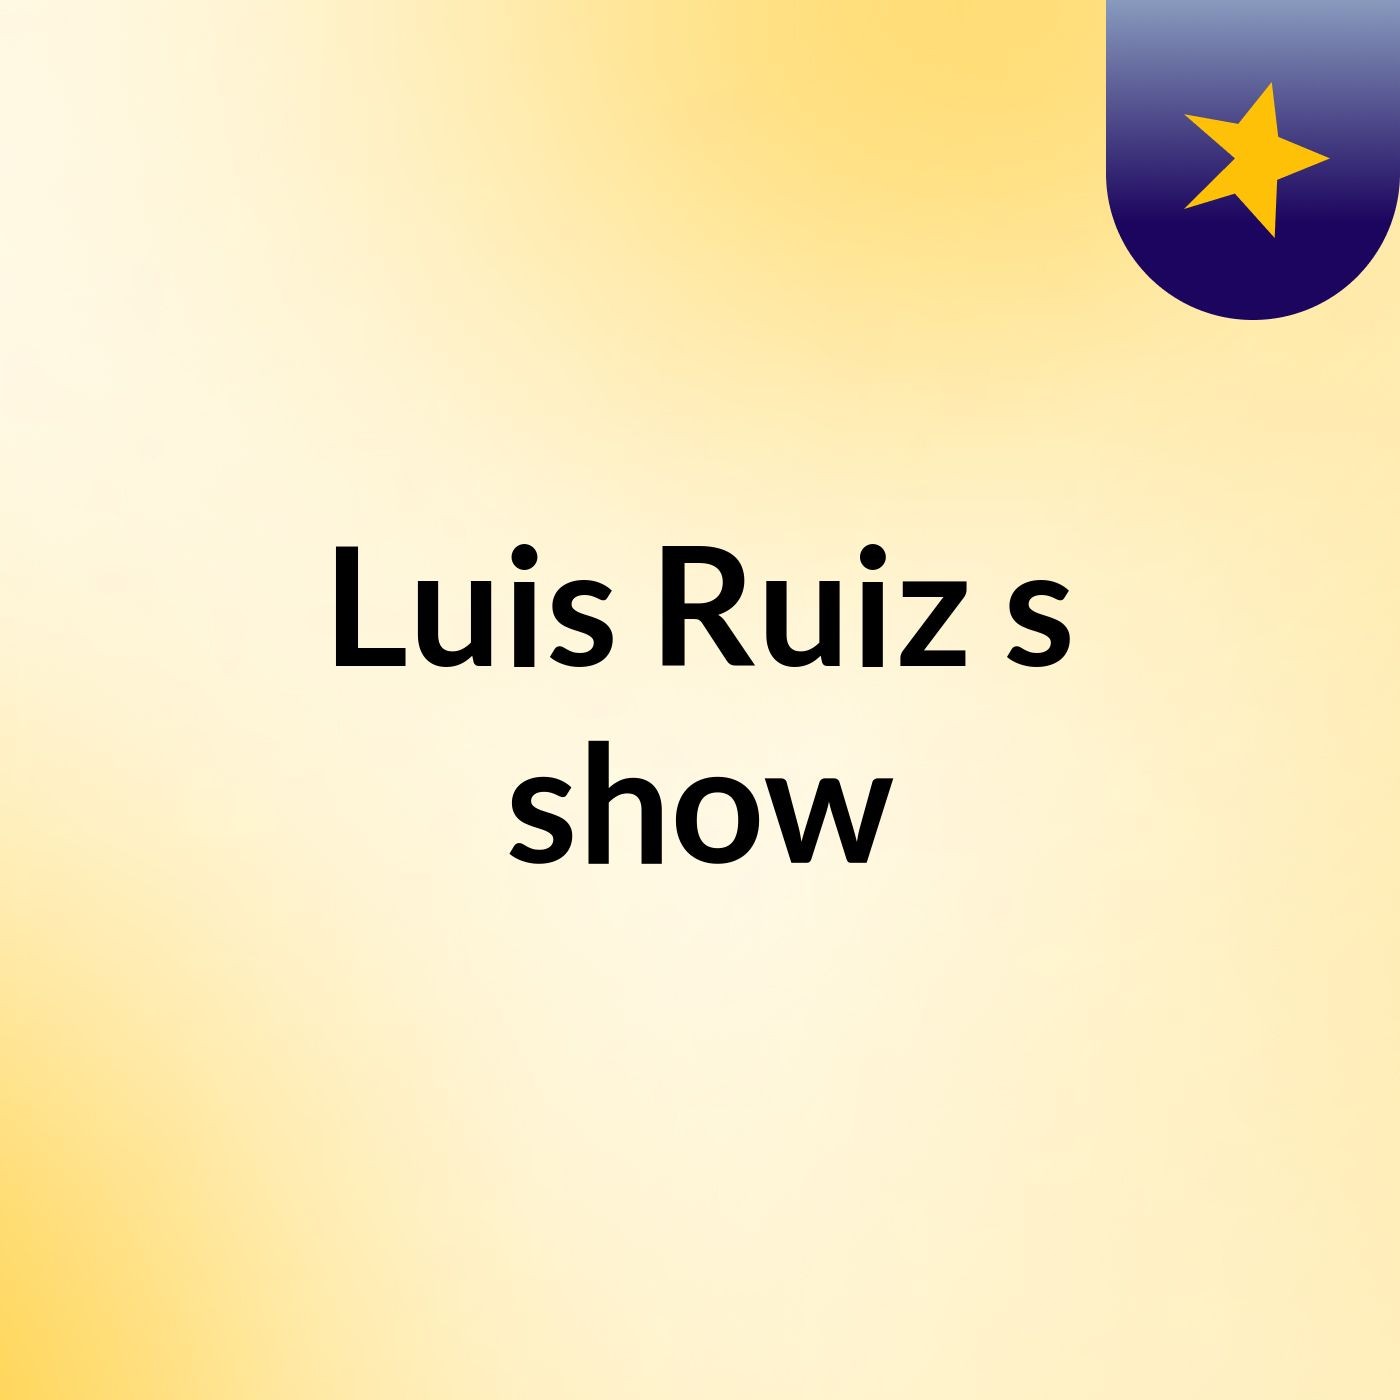 Luis Ruiz's show